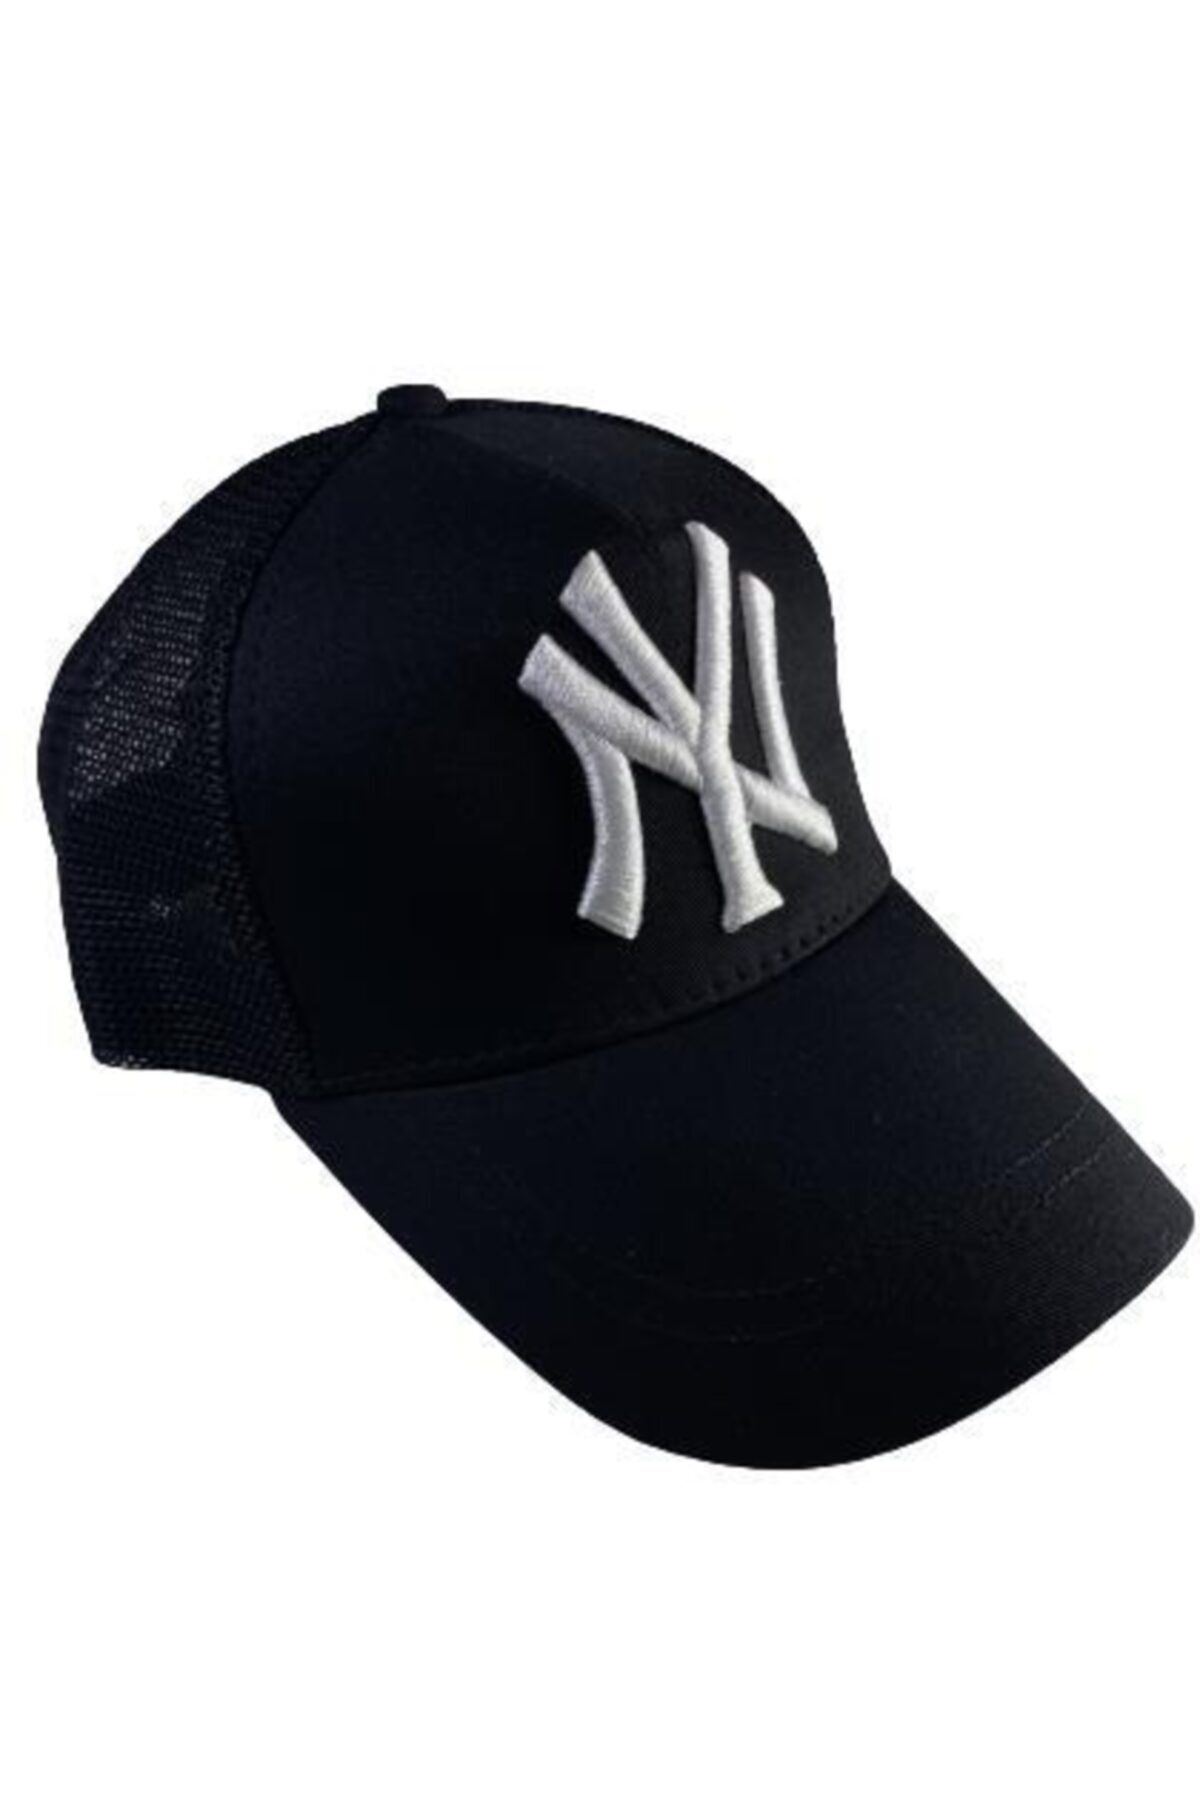 Moda Kızı Butik Siyah Ny Cap Yankees Fileli Unisex Şapka